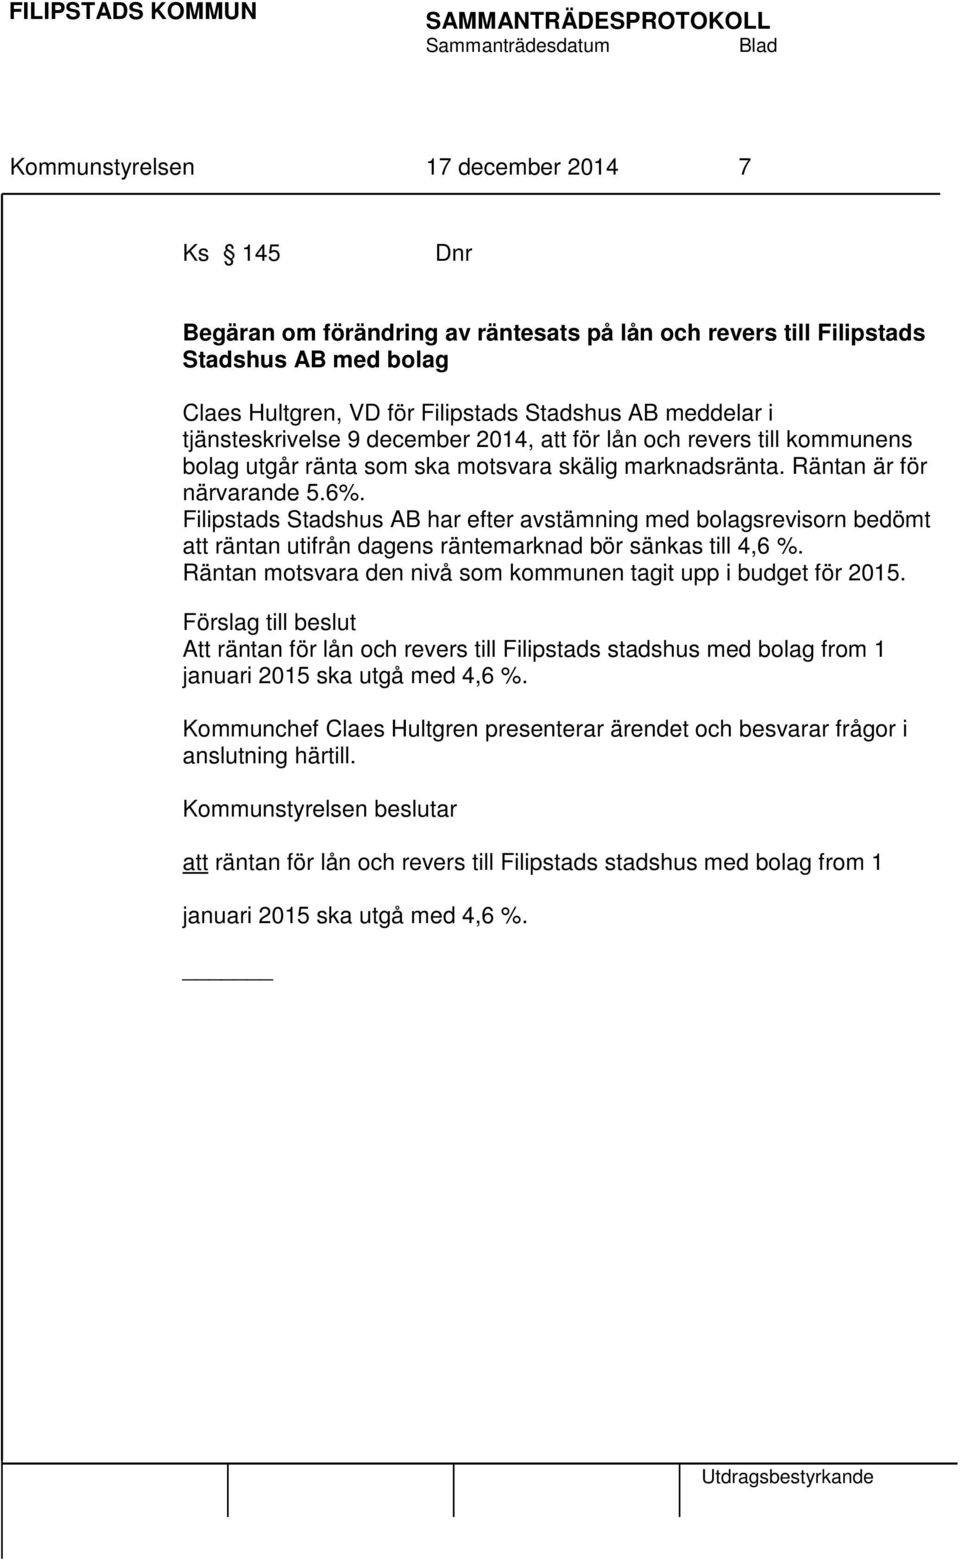 Filipstads Stadshus AB har efter avstämning med bolagsrevisorn bedömt att räntan utifrån dagens räntemarknad bör sänkas till 4,6 %. Räntan motsvara den nivå som kommunen tagit upp i budget för 2015.